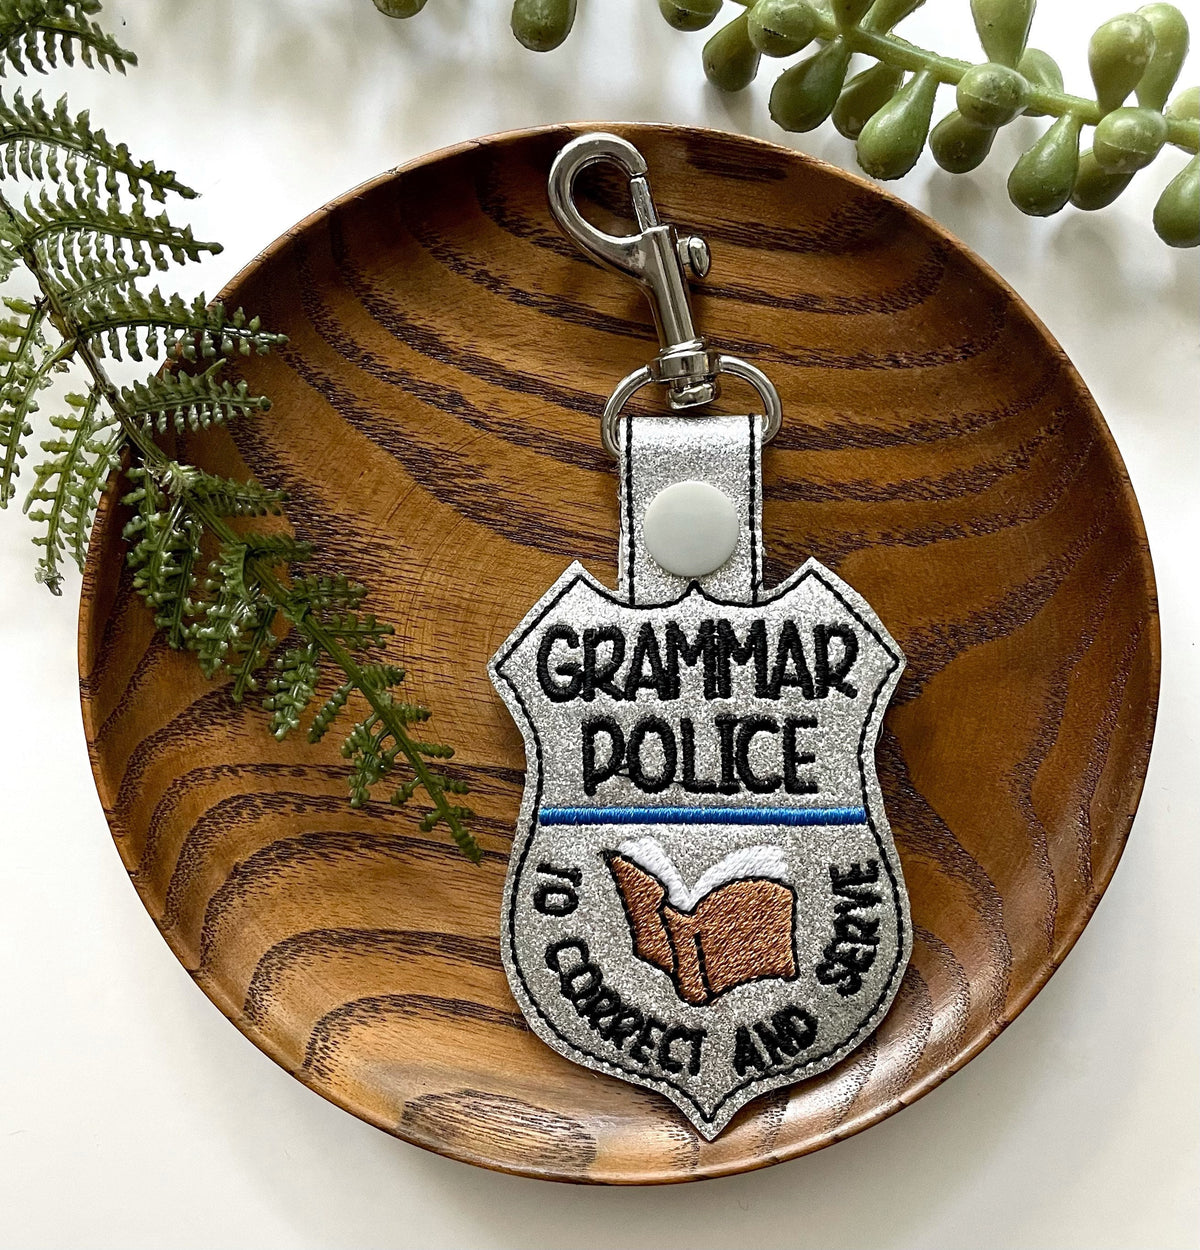 Grammar Police Keychain